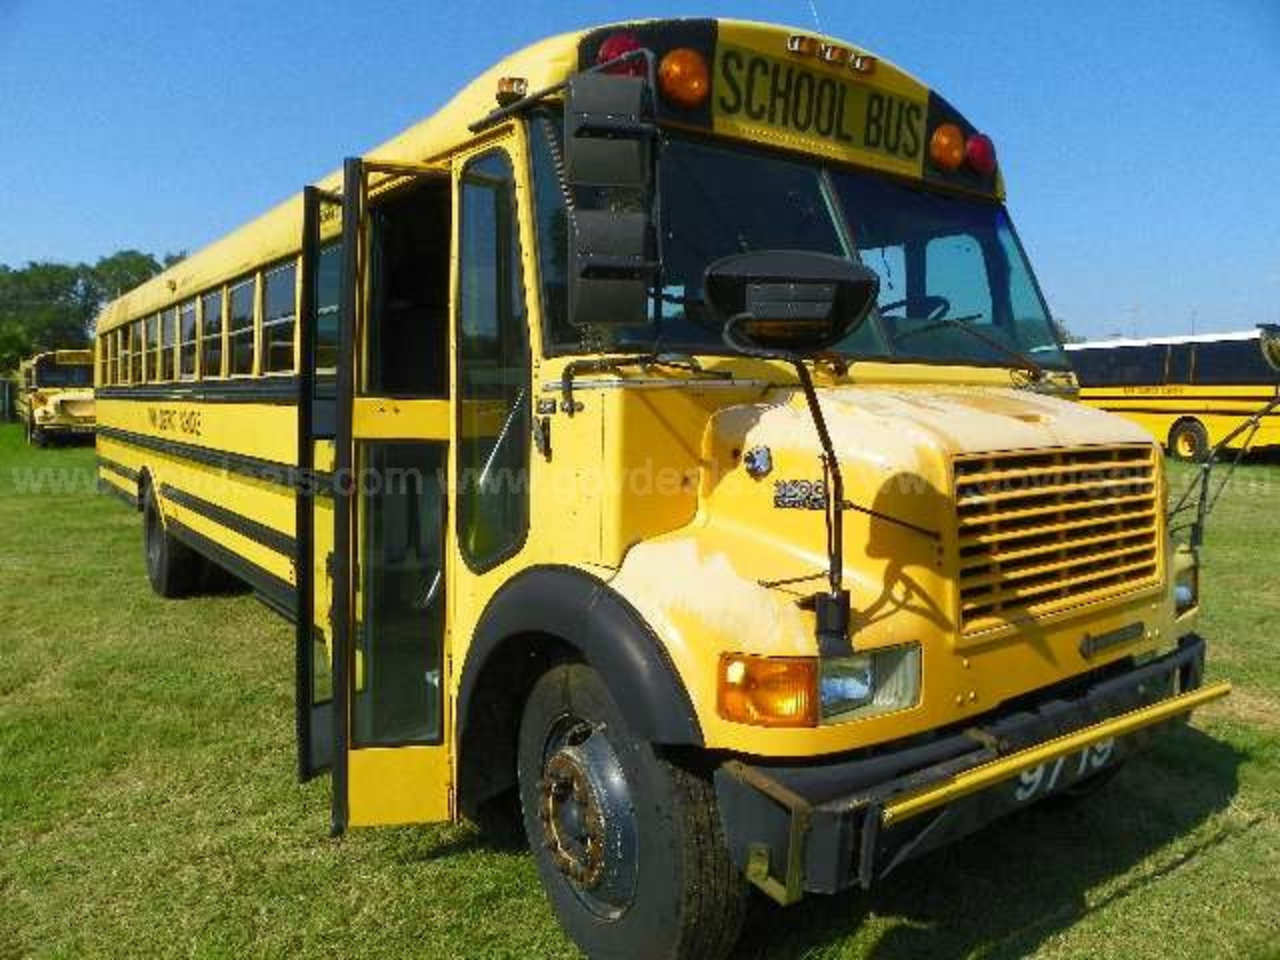 1997 International 3600 Vista School Bus | Flickr - Photo Sharing!